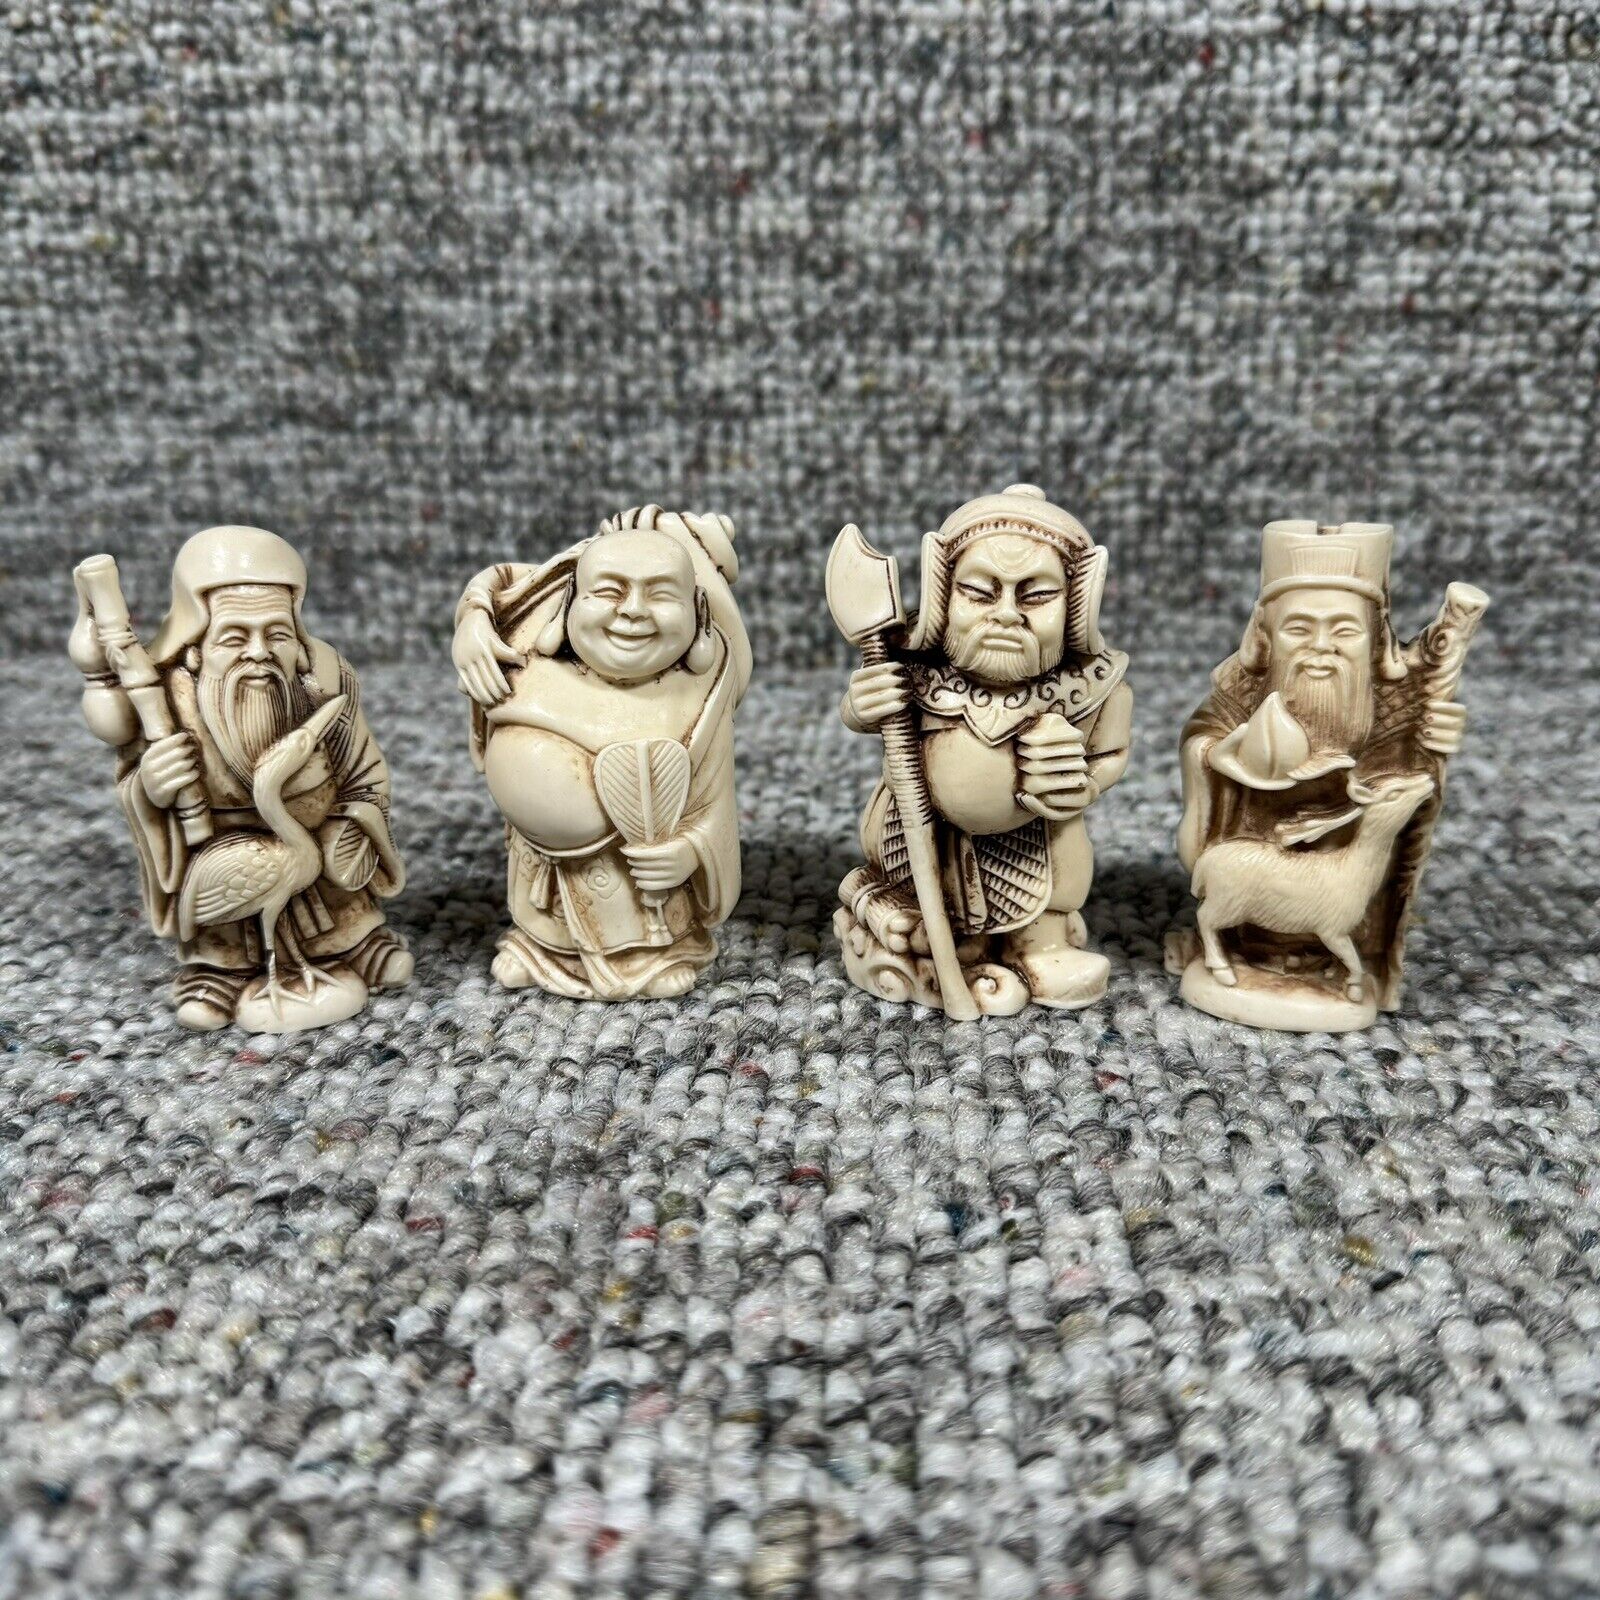 VIntage Chinese Resin Miniature Figurines